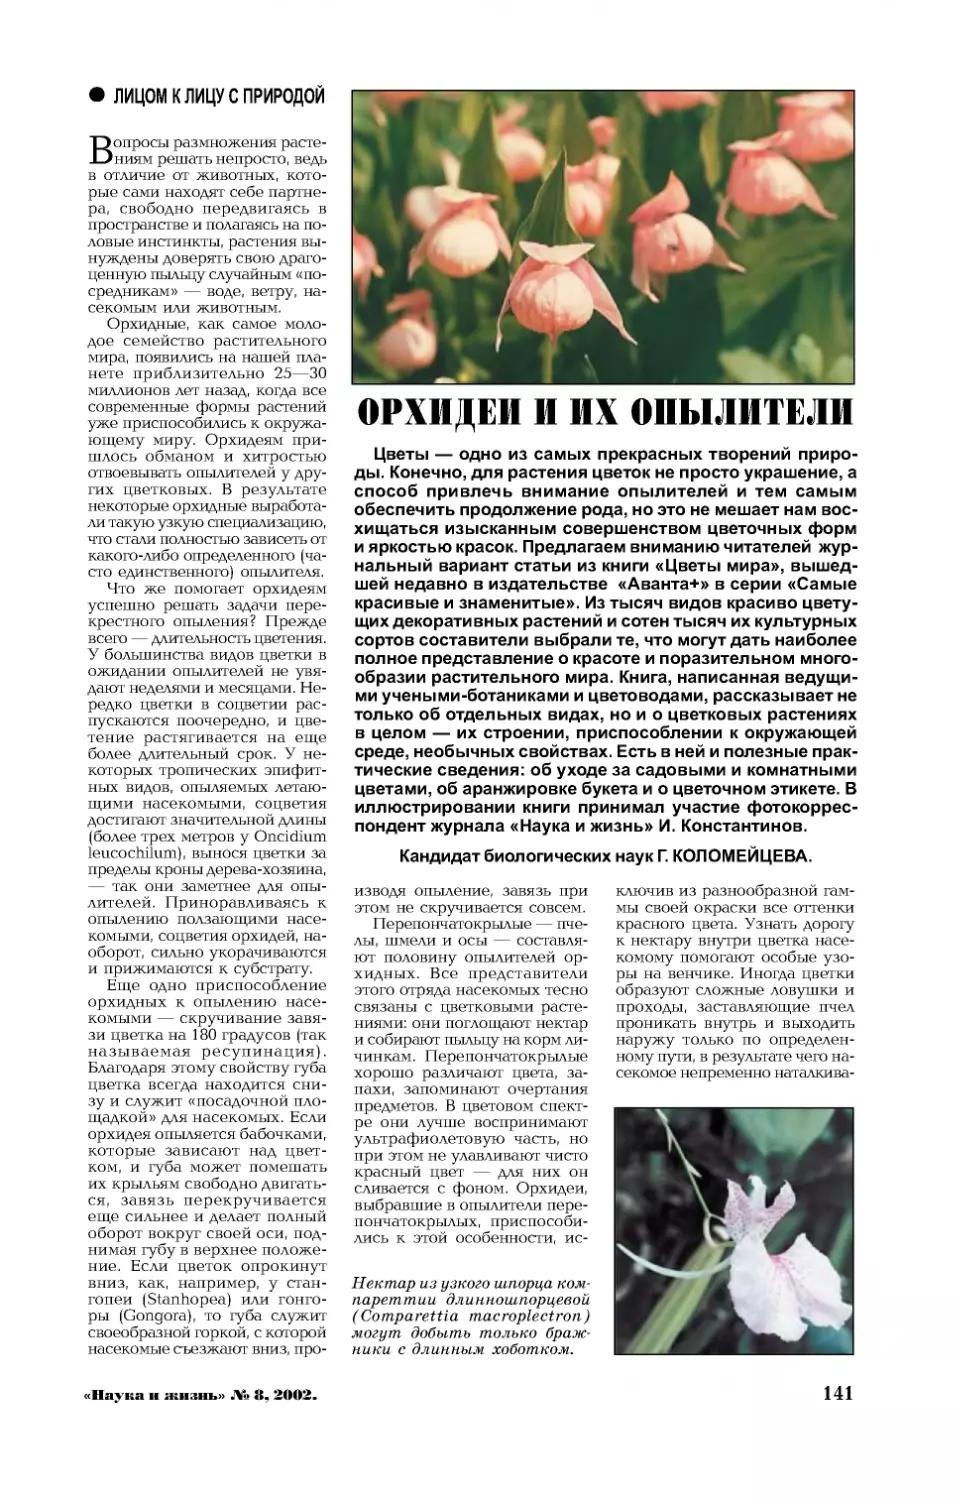 Г. КОЛОМЕЙЦЕВА, канд. биол. наук — Орхидеи и их опылители